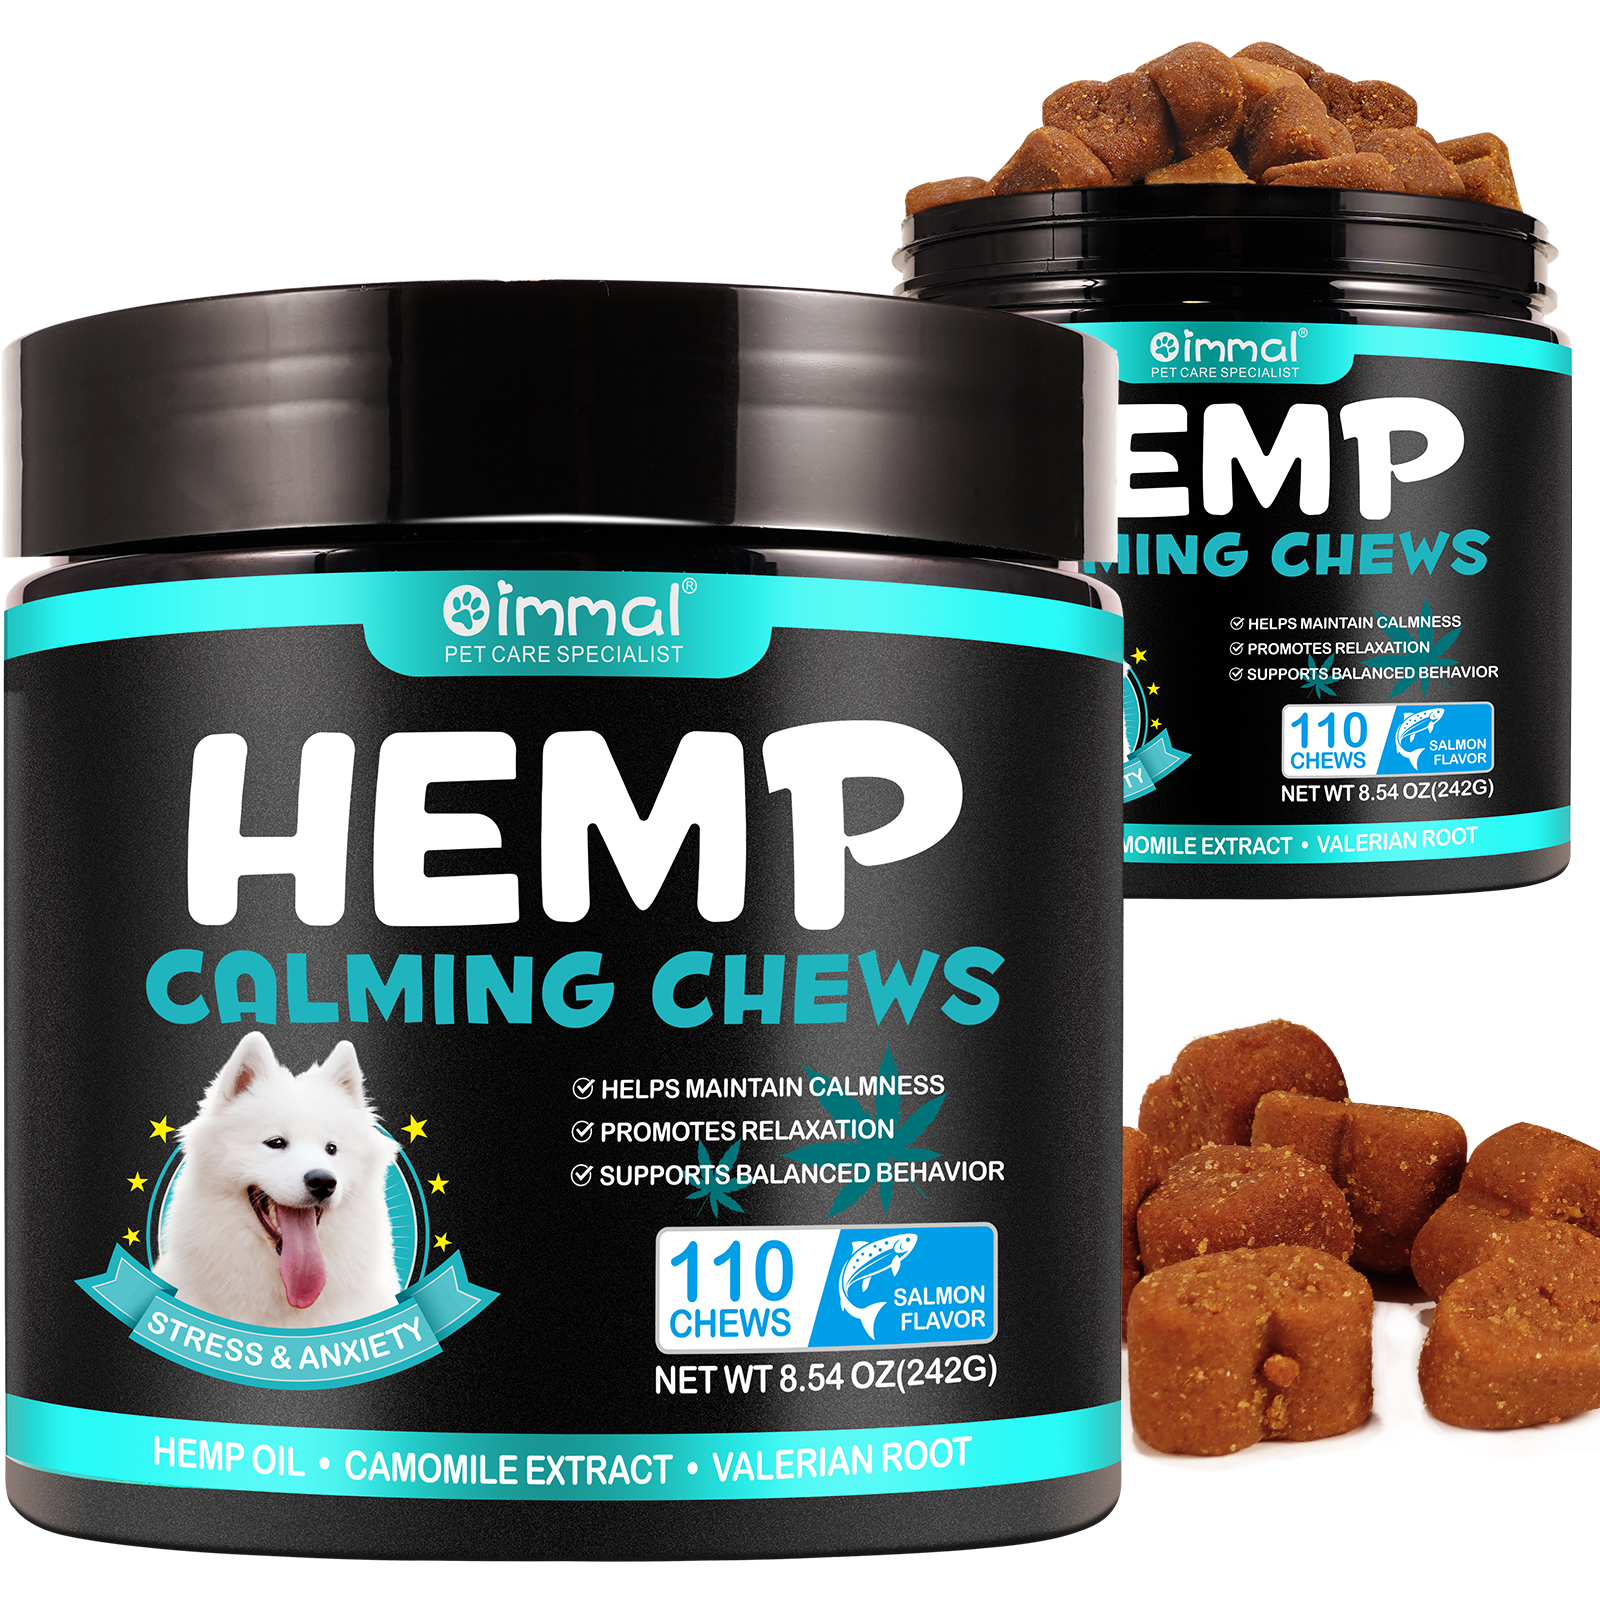 Oimmal Hemp Calming Chews / Salmon Flavor - 2 Packs